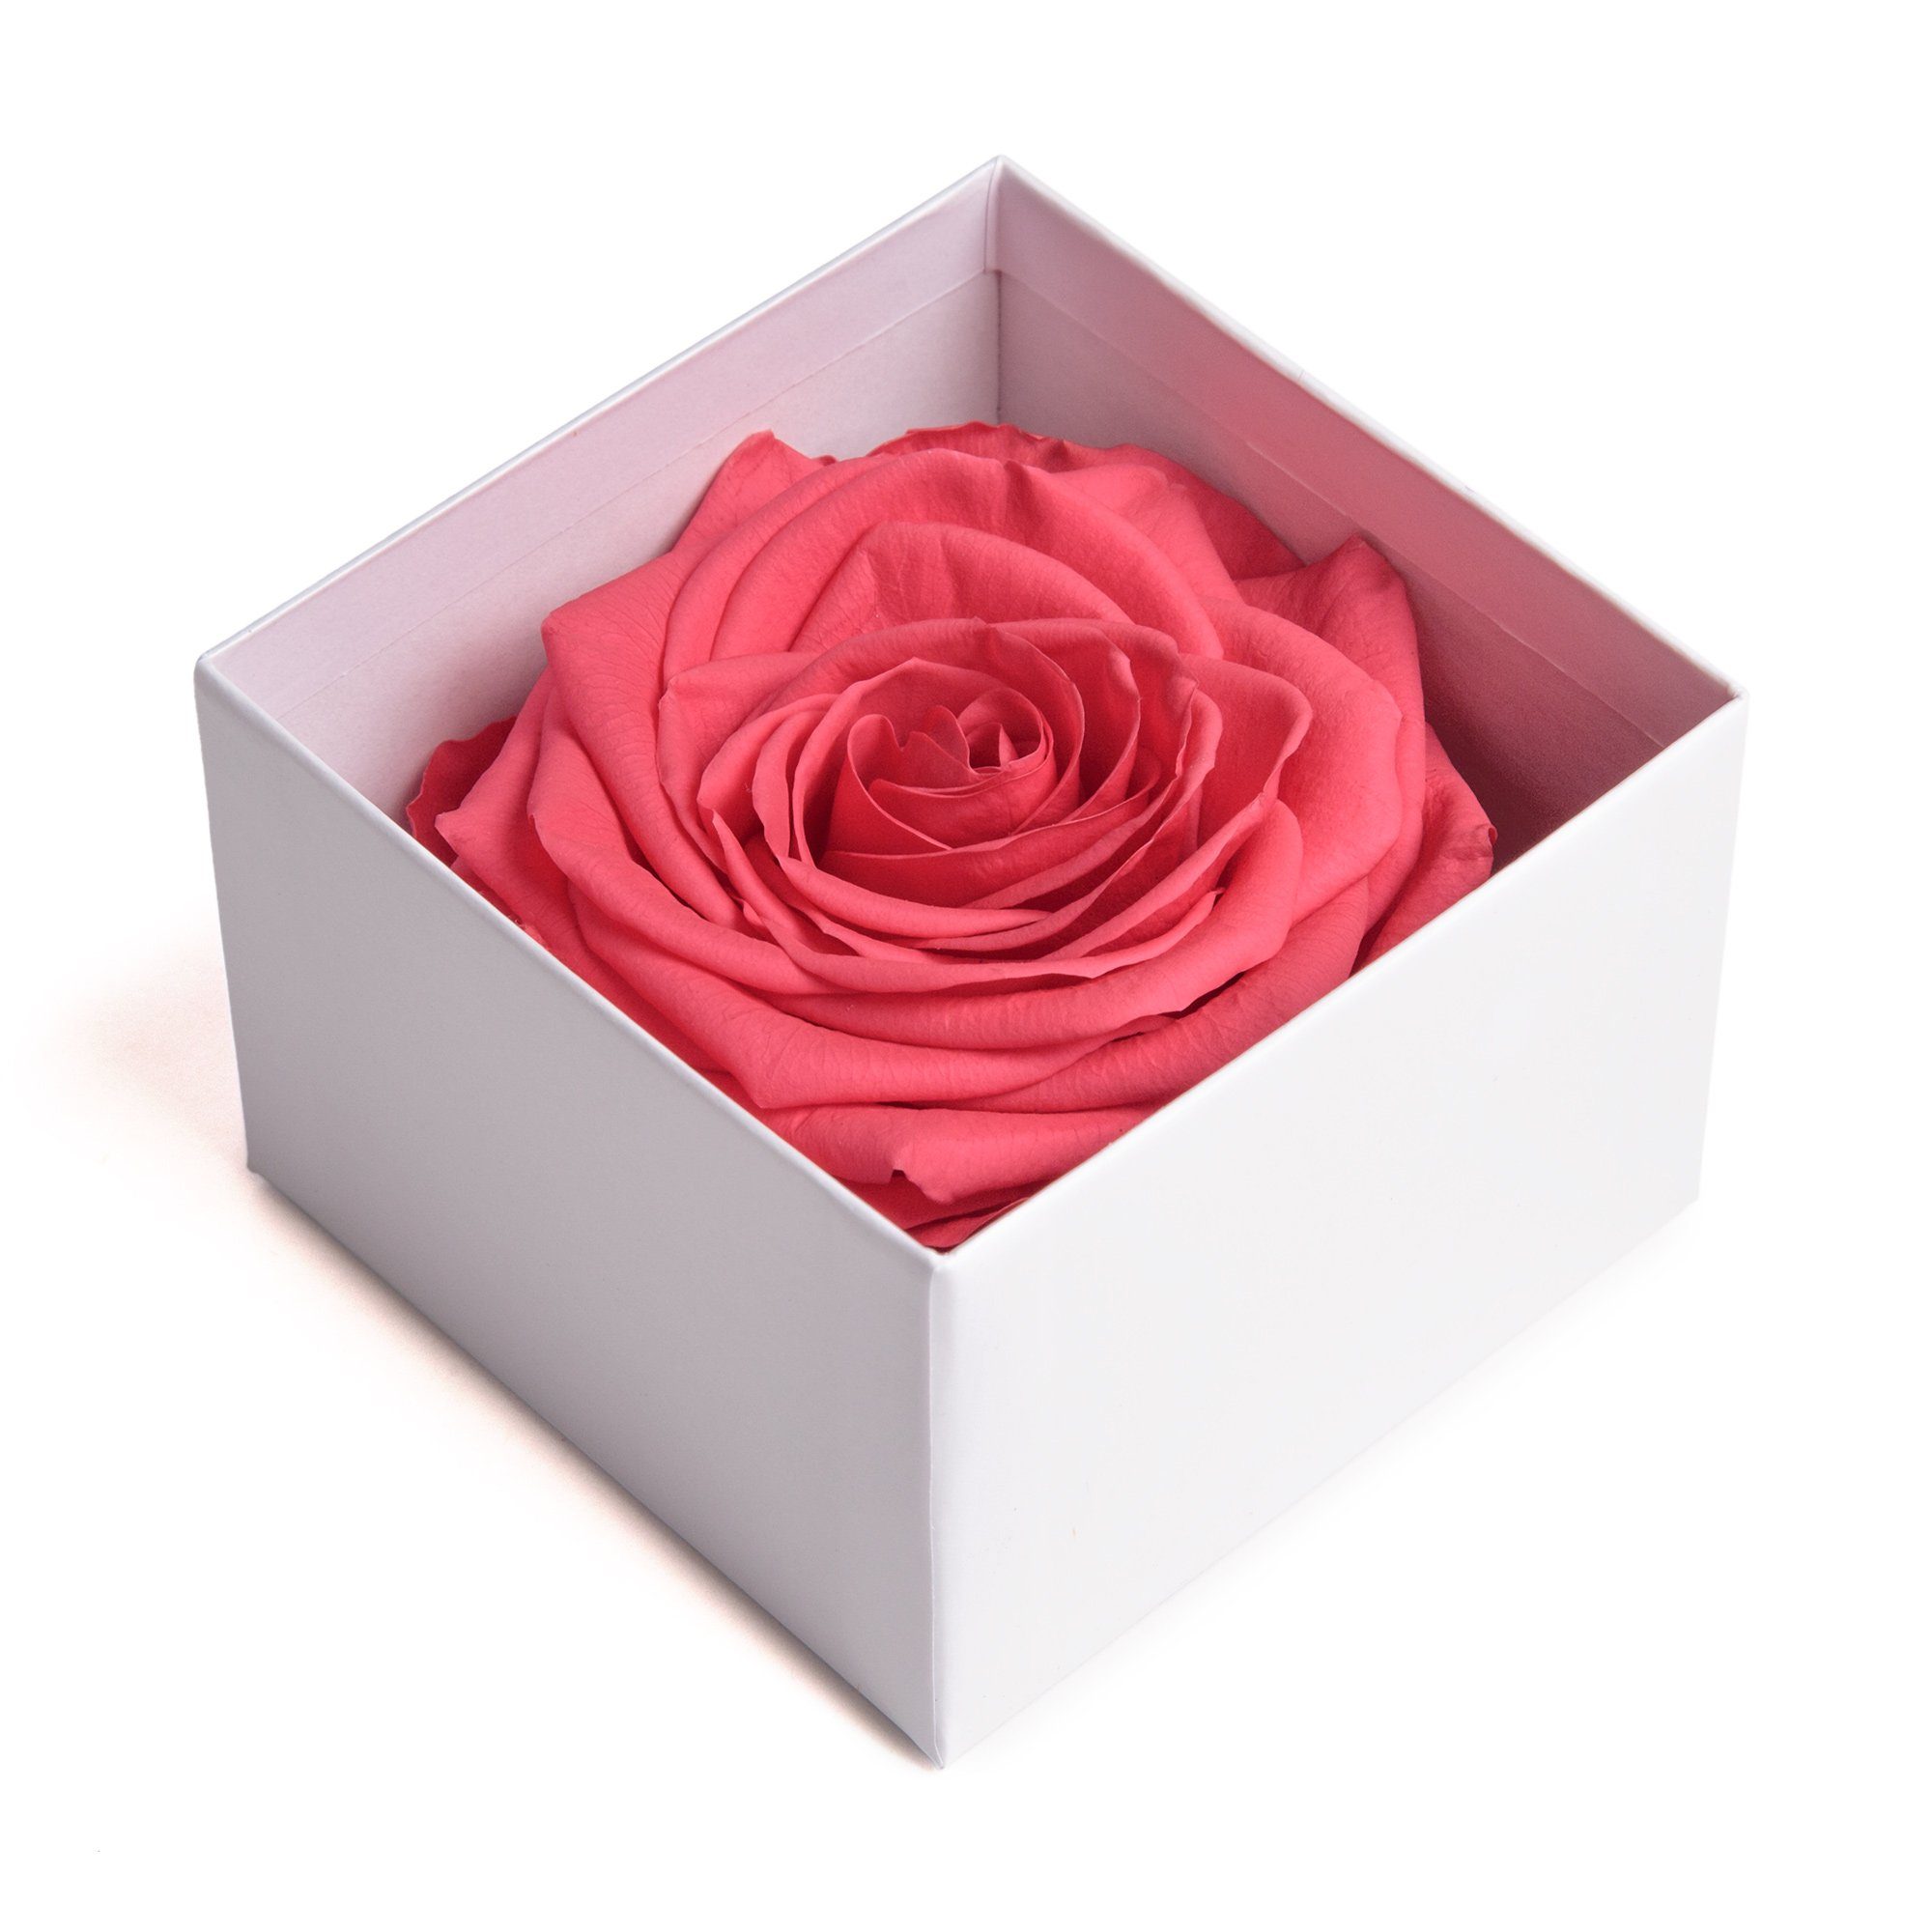 SCHULZ I Höhe Box zu pink Valentinstag Liebesbeweis Rose Infinity 3 in ROSEMARIE cm, LOVE Jahre Heidelberg, 6 weiß Geschenk Kunstblume YOU Frauen Rose bis haltbar Rose,